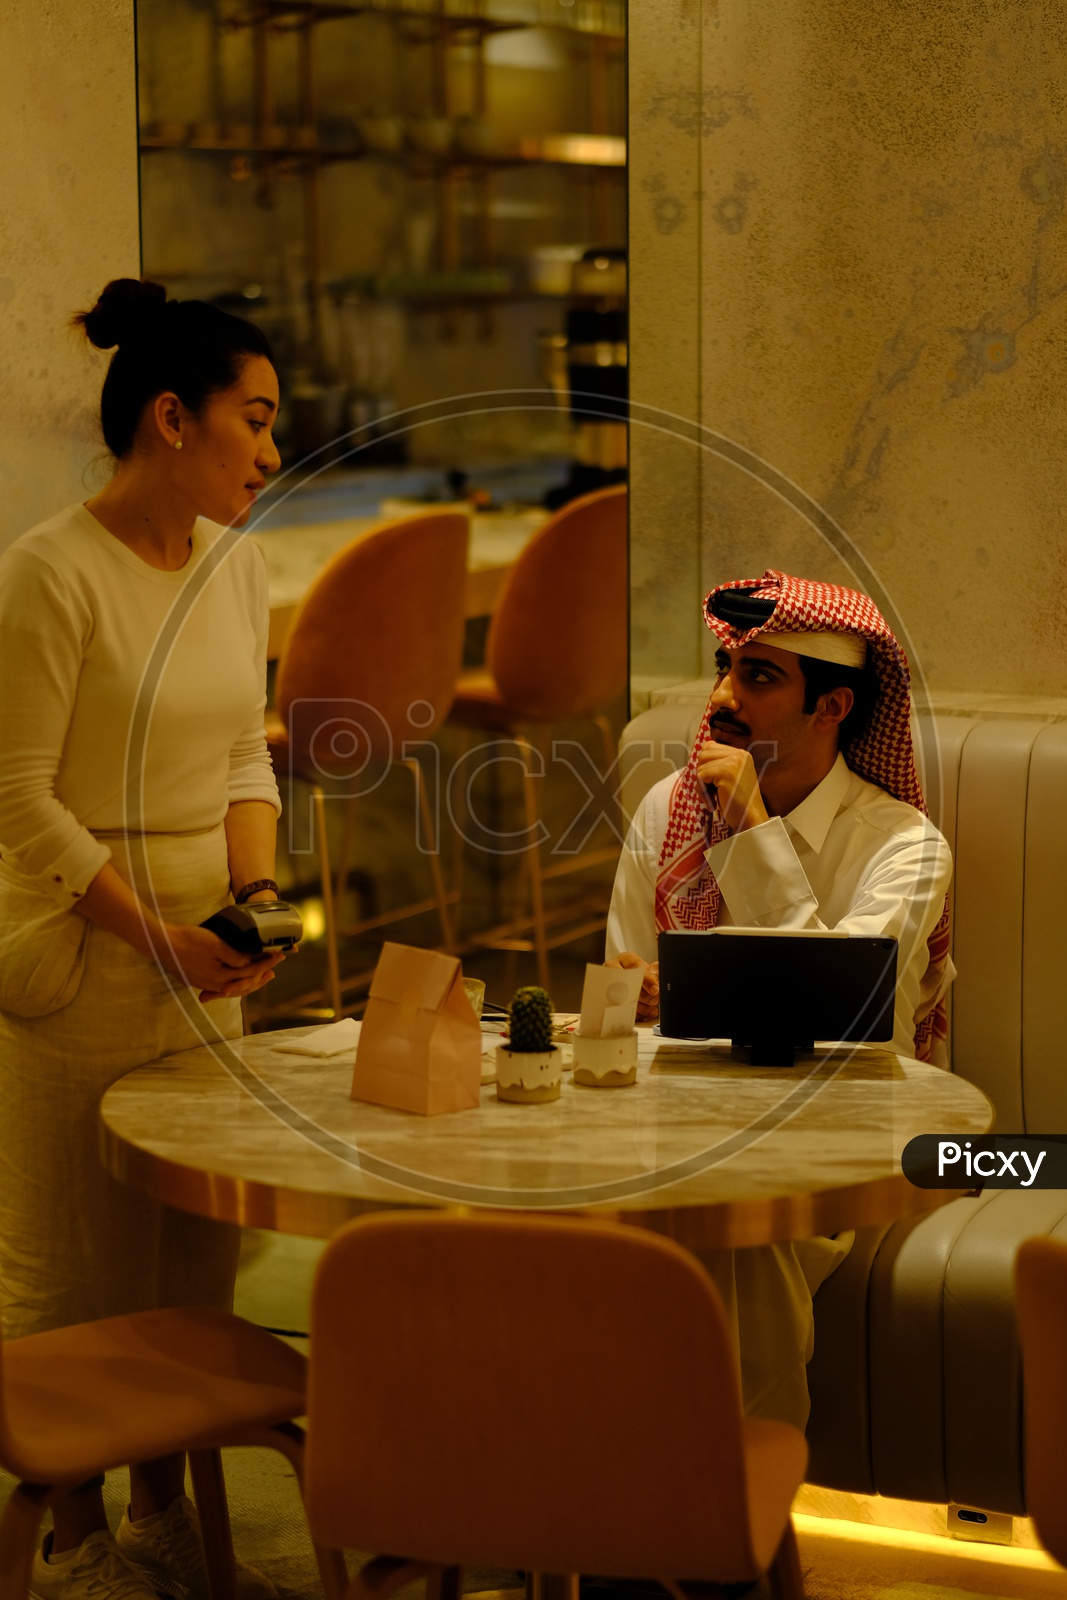 A Sheikh in a Qatar Restaurant